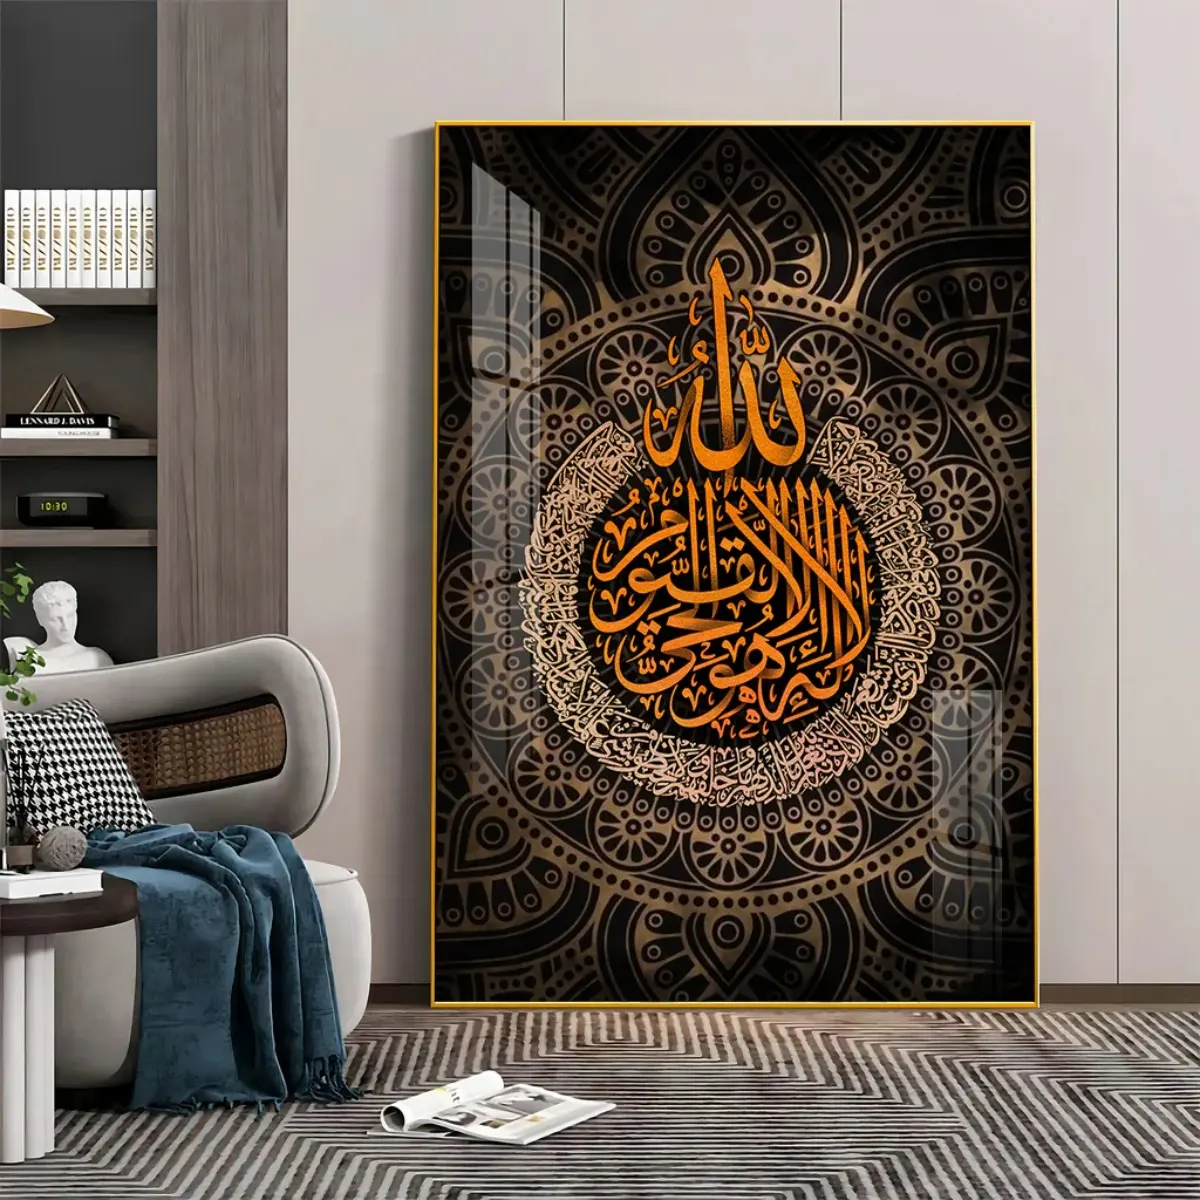 이슬람 가정 장식 벽 교수형 예술 대형 벽 예술 장식 아랍어 서예 이슬람 크리스탈 도자기 그림 벽 아트 프레임